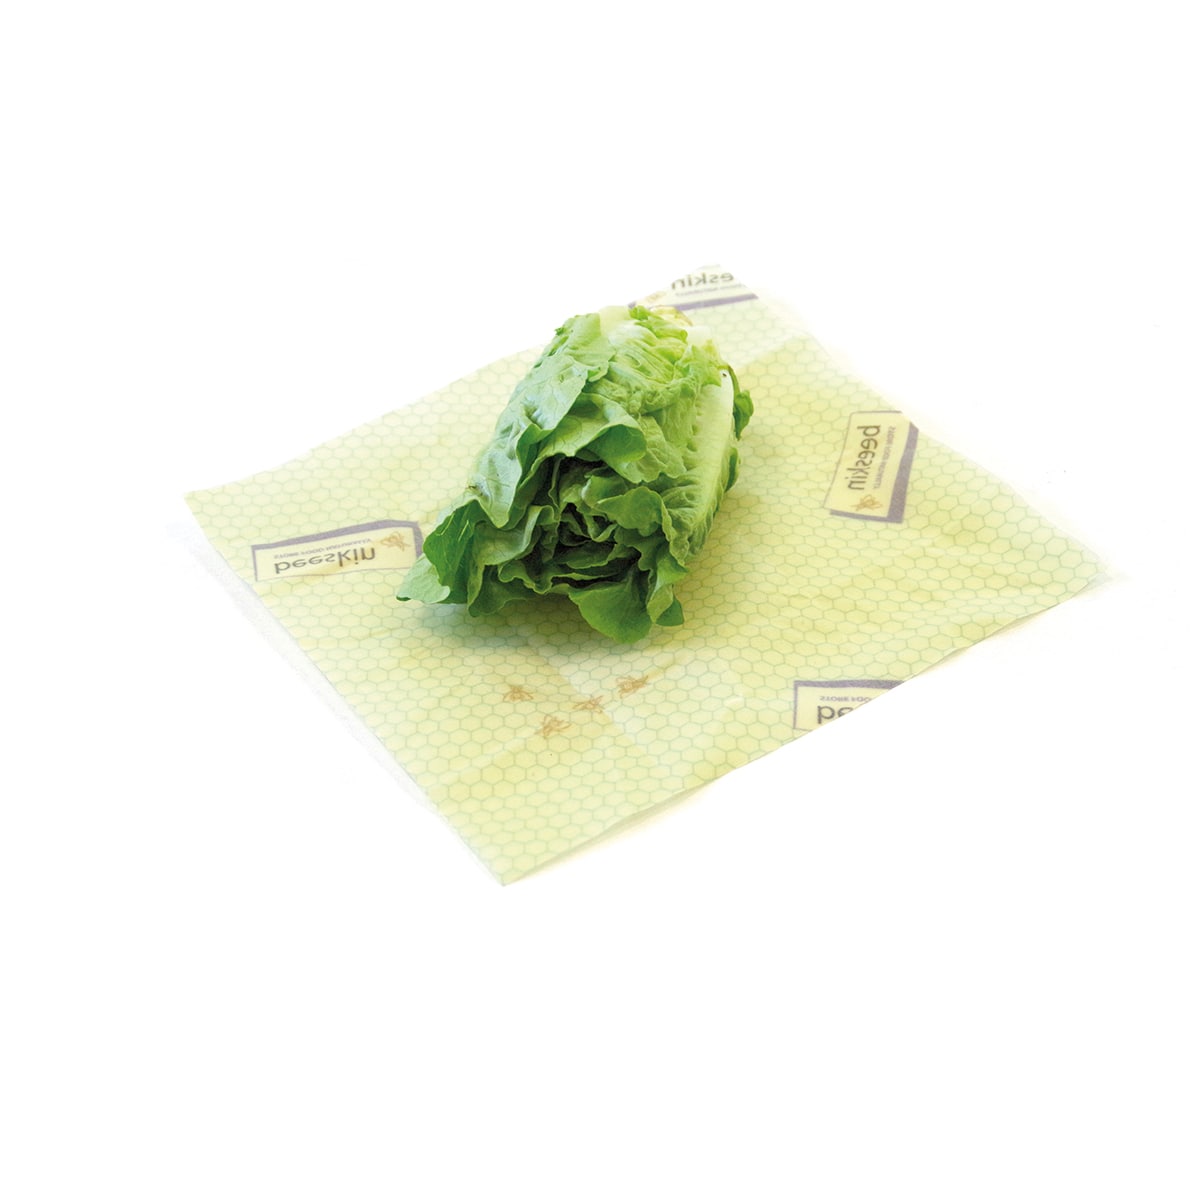 lettuce heart wrapped in beeskin size m